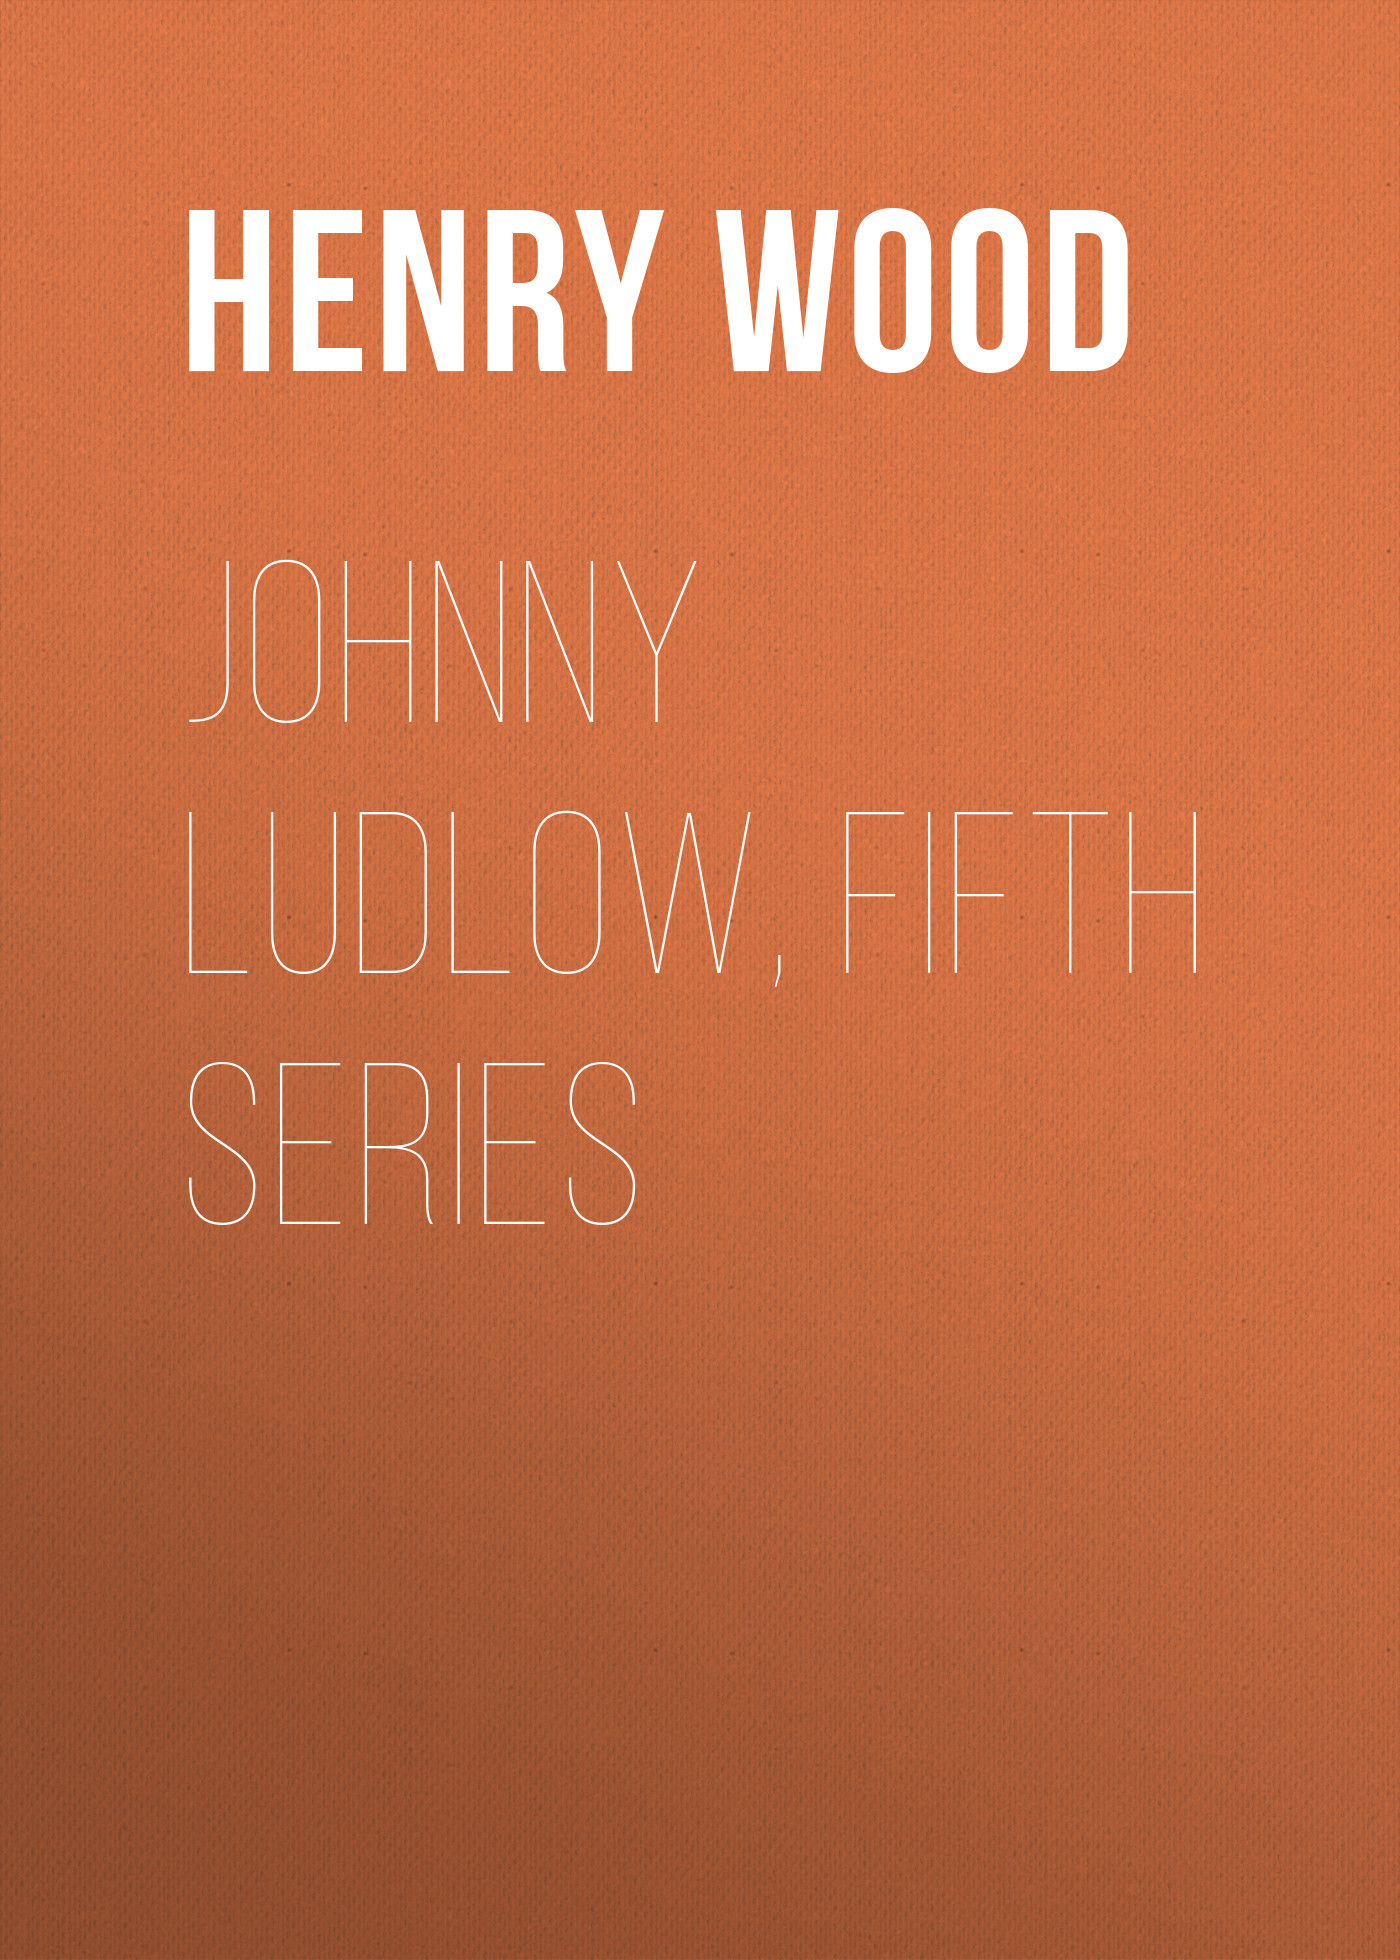 Книга Johnny Ludlow, Fifth Series из серии , созданная Henry Wood, может относится к жанру Зарубежная классика, Литература 19 века, Зарубежная старинная литература. Стоимость электронной книги Johnny Ludlow, Fifth Series с идентификатором 35007513 составляет 0 руб.